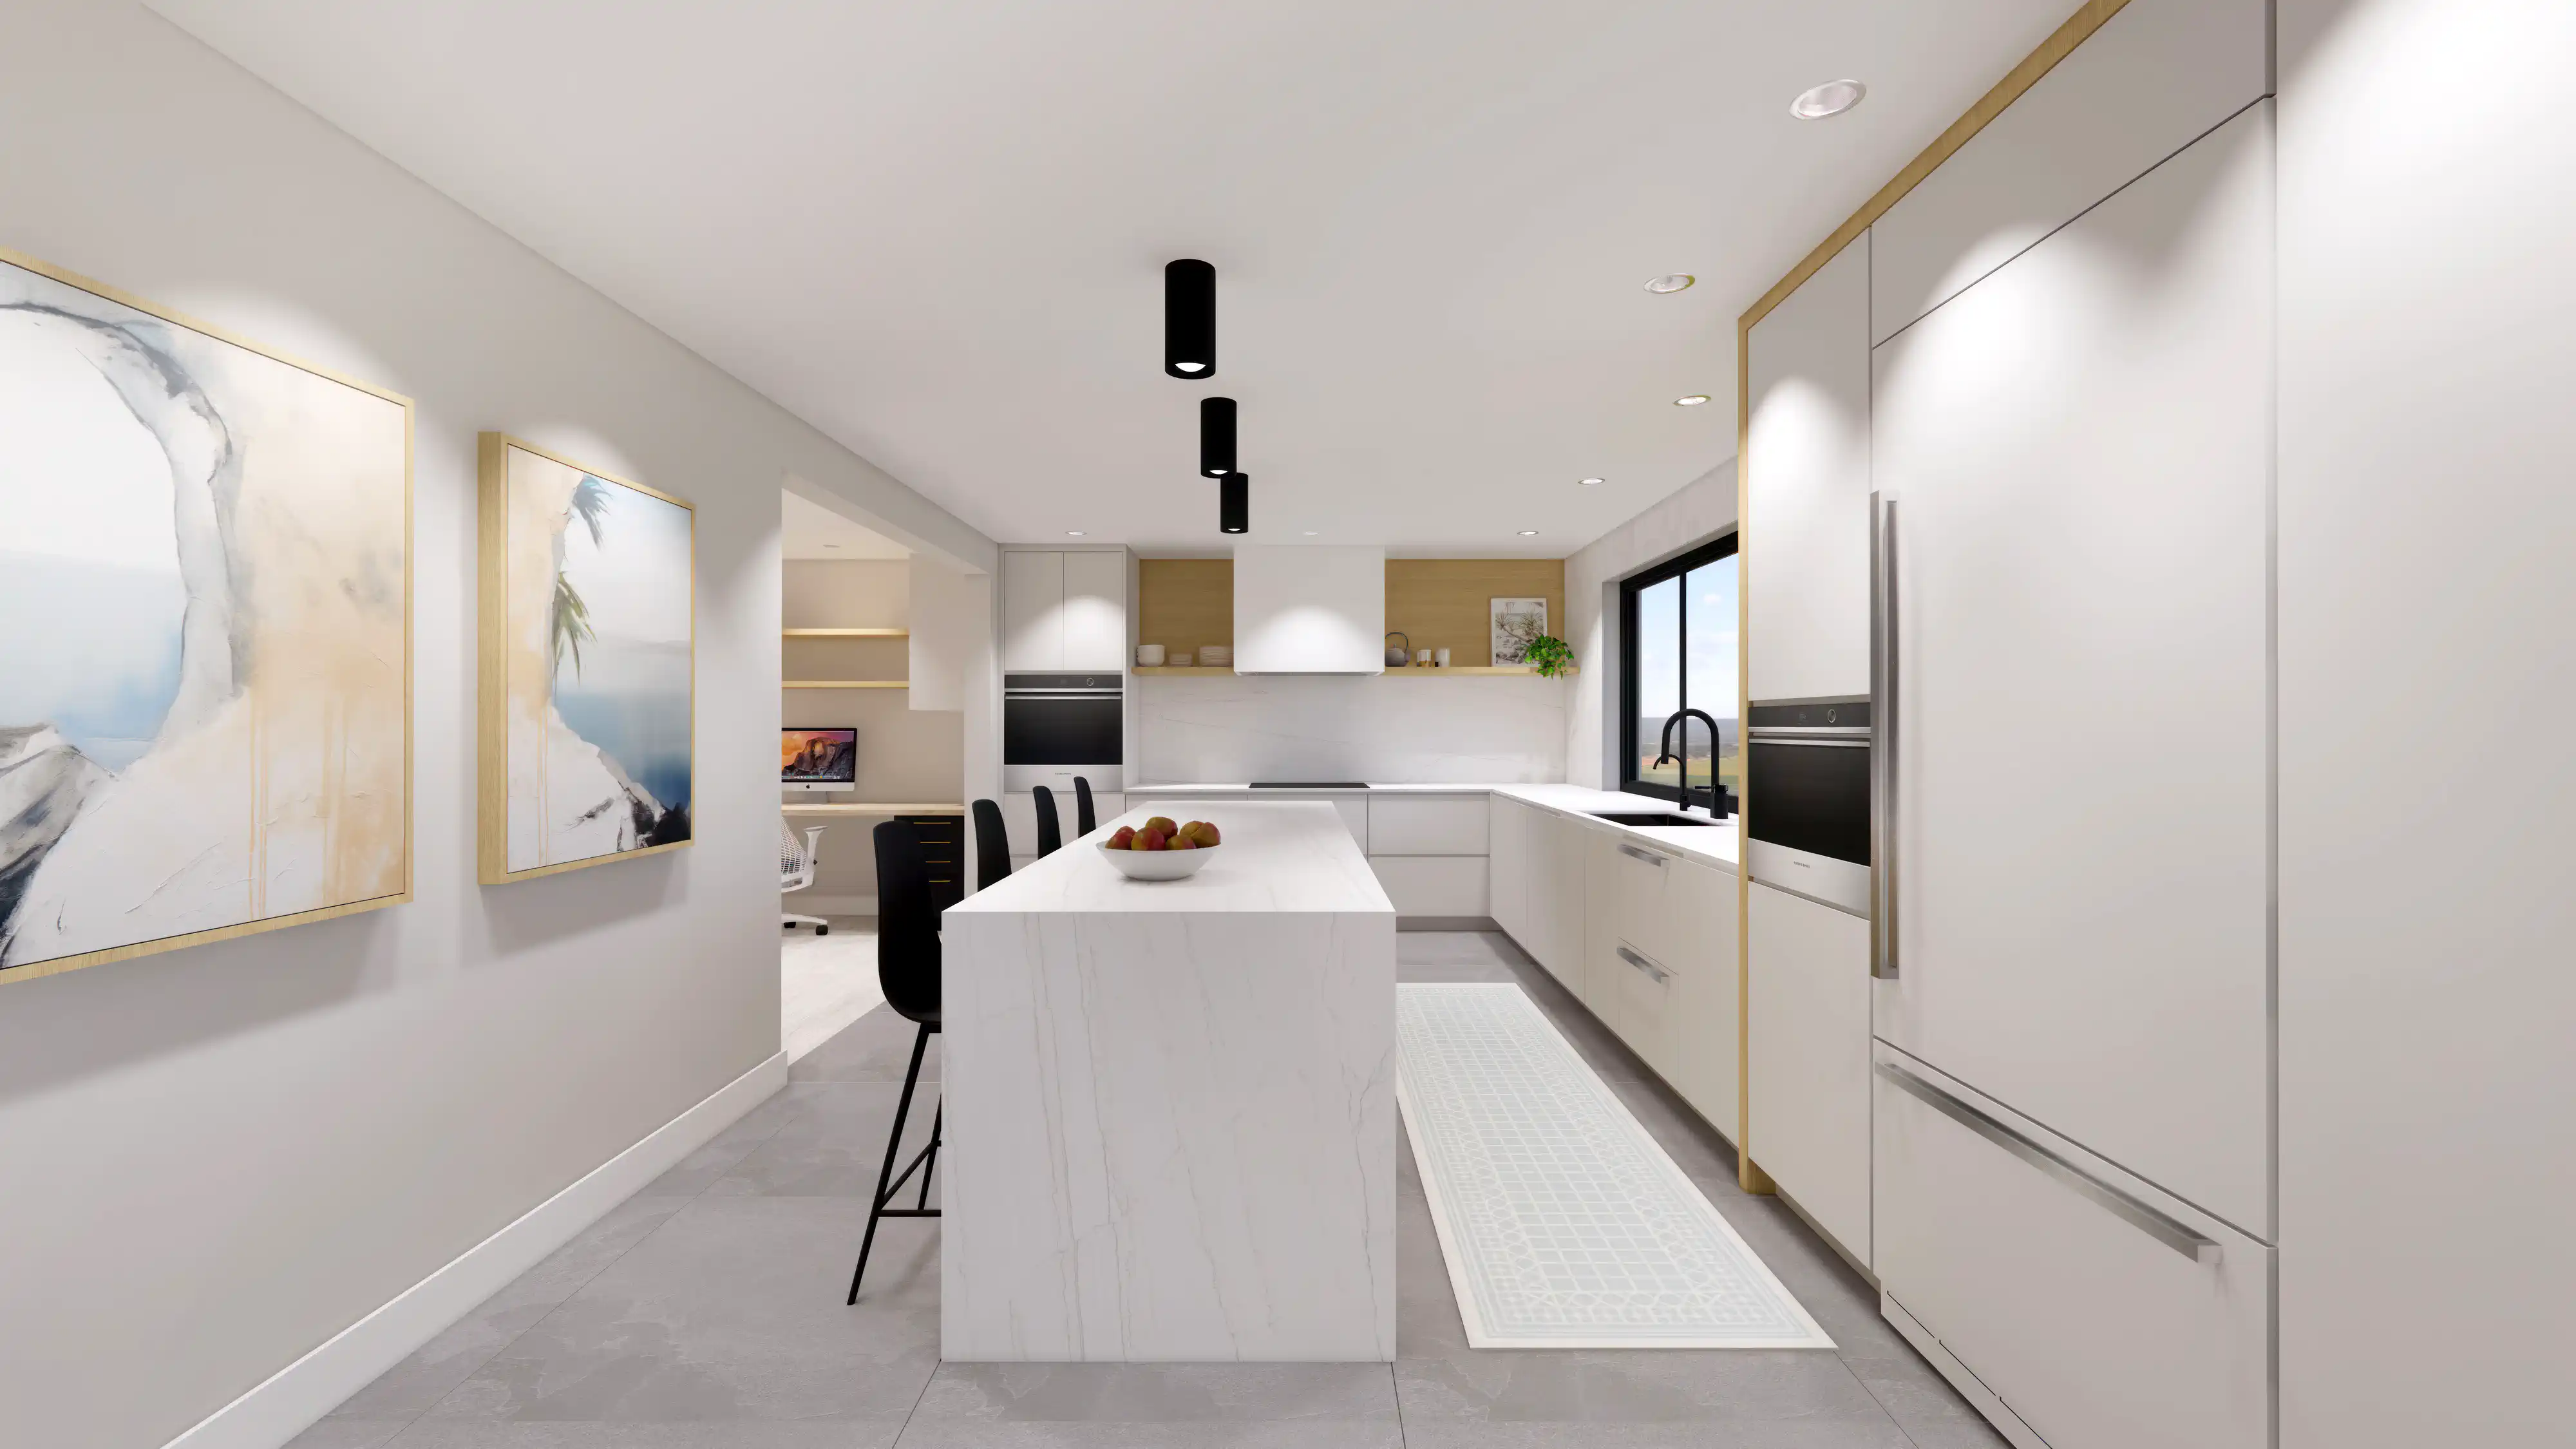 Rendu 3D d'une cuisine moderne avec îlot en marbre, équipements modernes et œuvres d'art encadrées, intérieur signé Sarah Brown Design